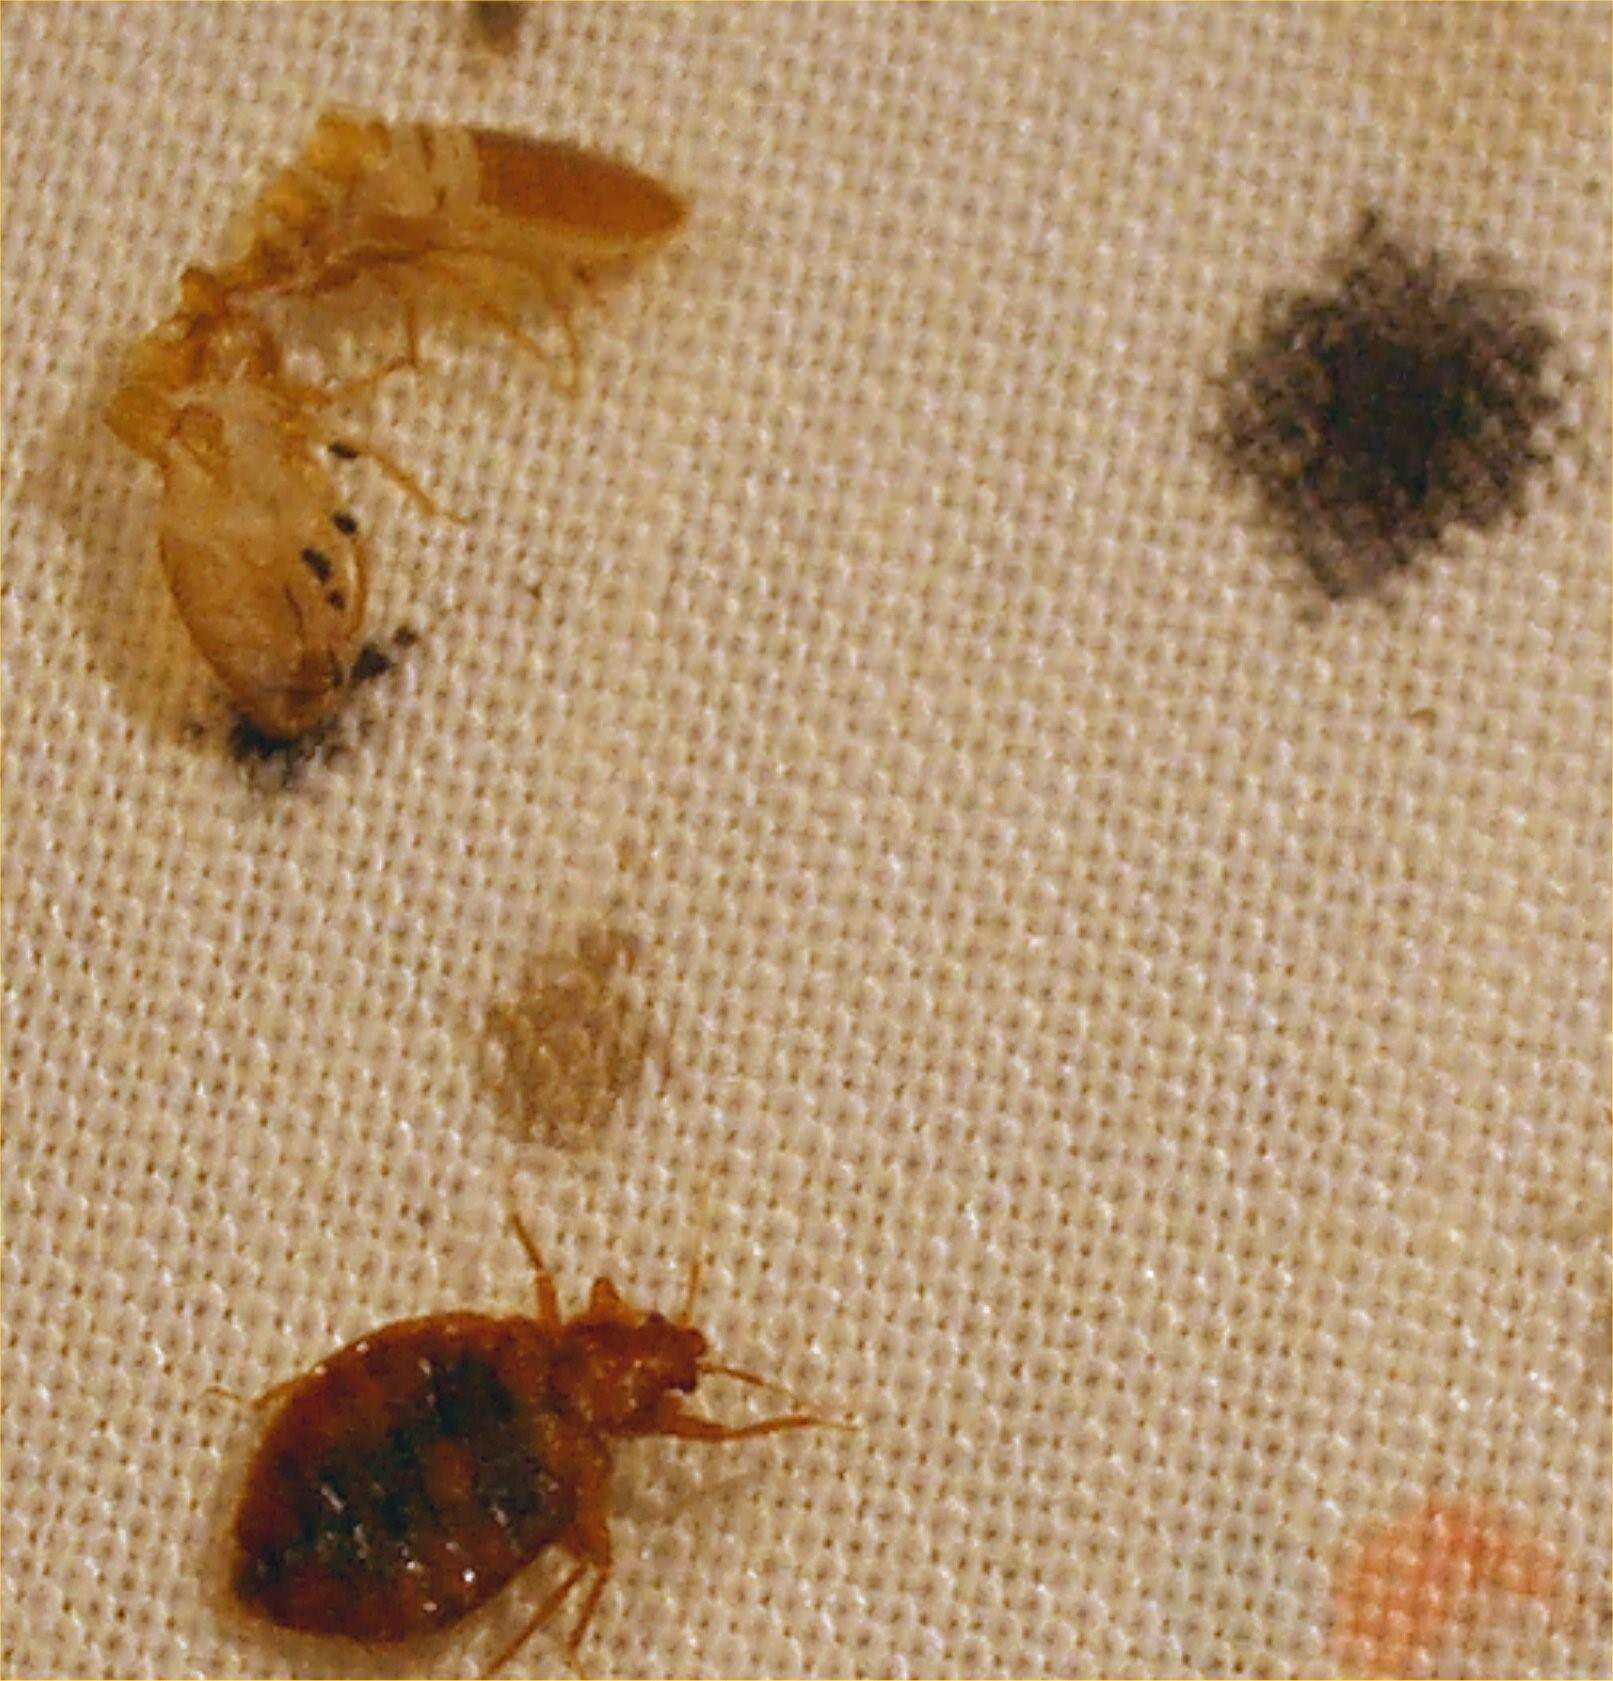 насекомые живущие в кровати